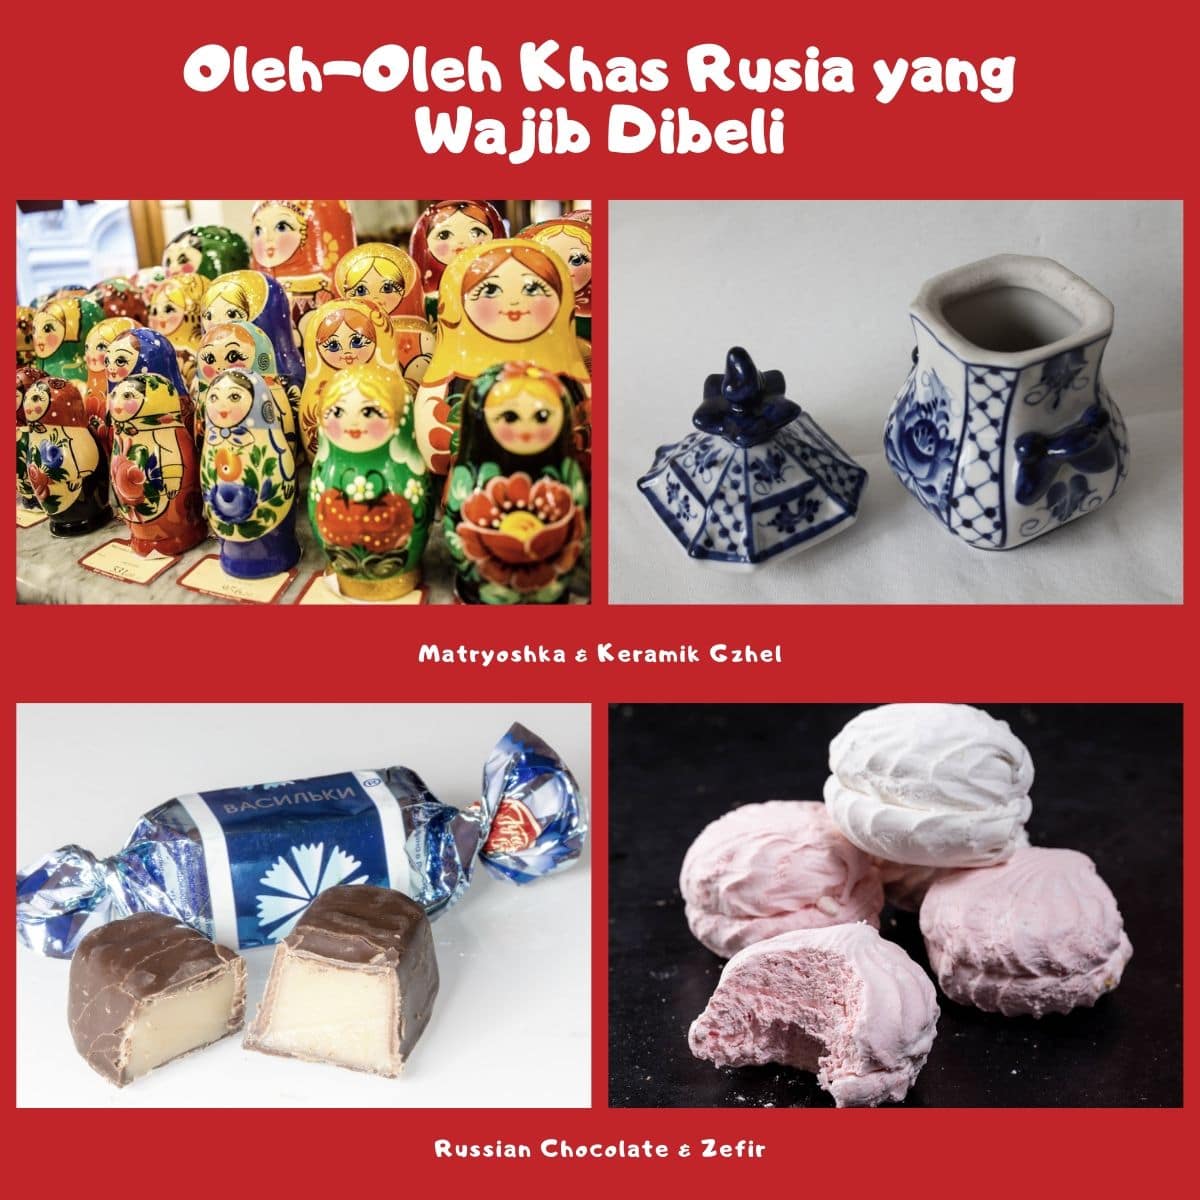 Oleh-Oleh yang Wajib Dibeli Saat Wisata di Rusia - Matryoshka, Keramik Gzhel, Russian Chocolate, & Zefir - Sumber Needpix, Wikimedia, & Flickr